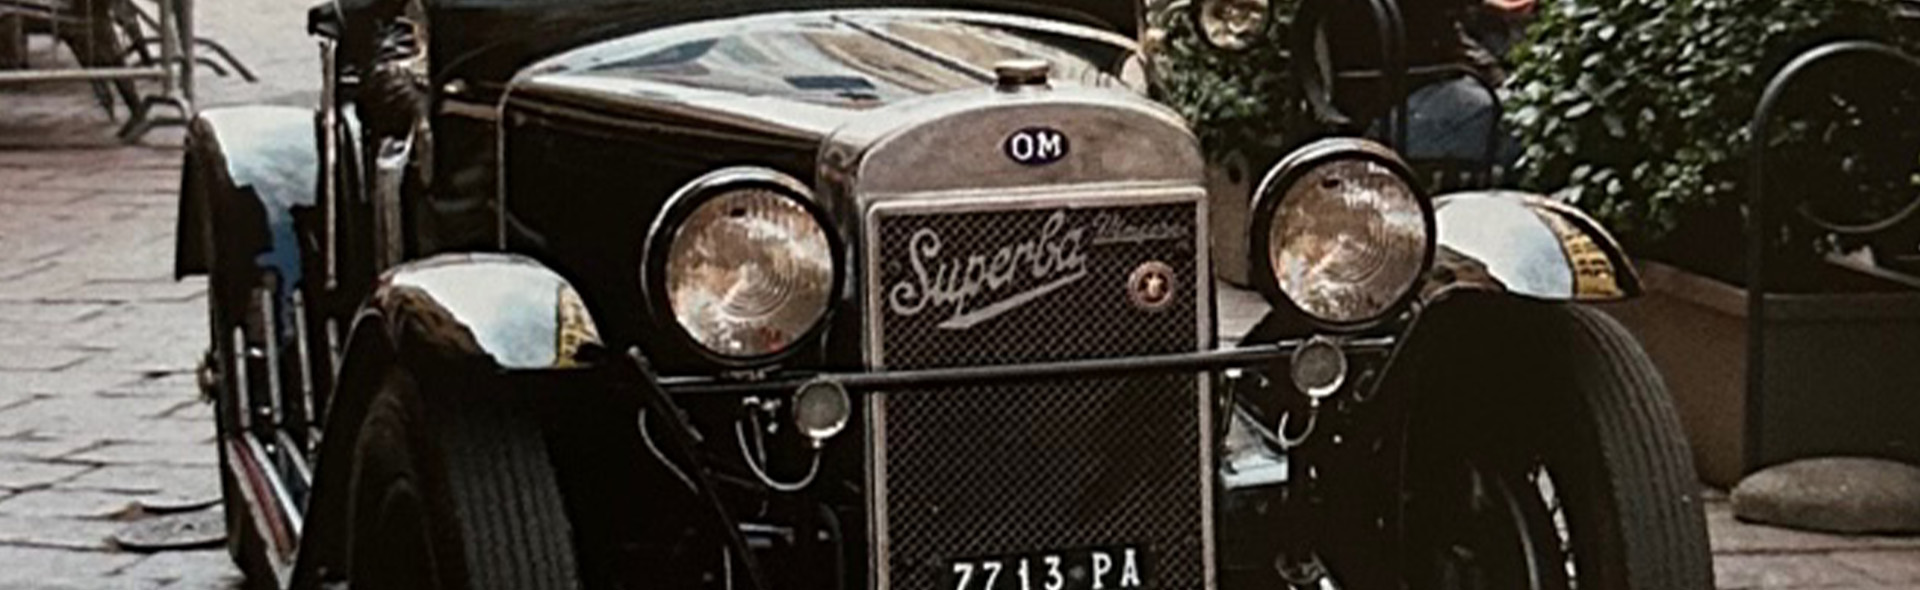 OM 665 Superba MM del 1930